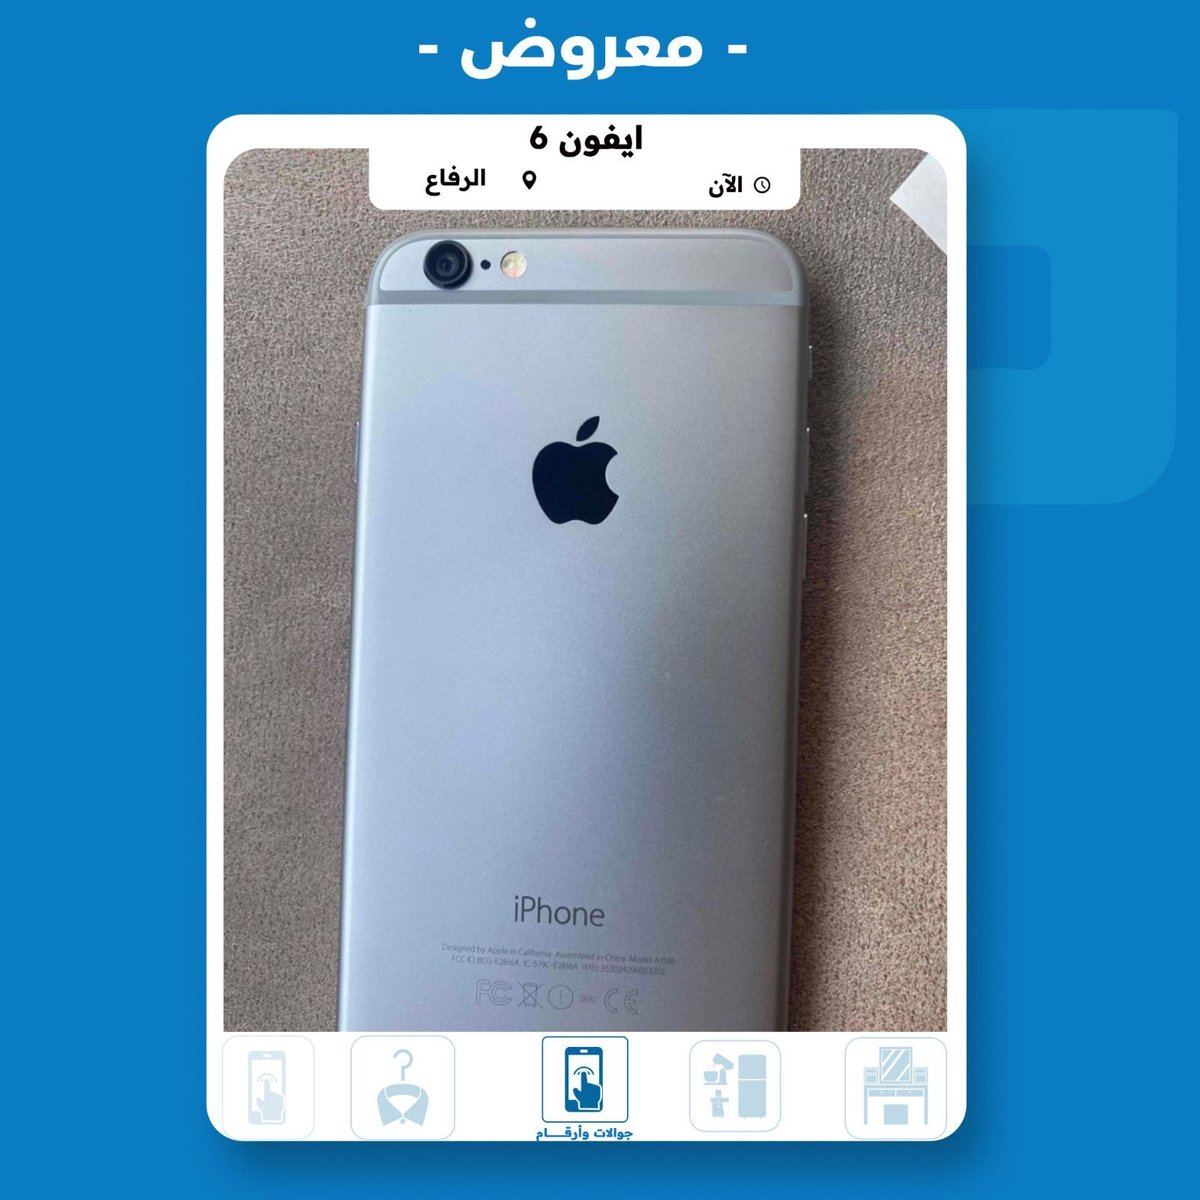 iphone 6 32 gb used like new 100% battery للبيع في الرفاع بسعر 3 دينار بحريني 
للتواصل مع المعلن 👇:
mstaml.com/4160350 
#مستعمل_وجديد_البحرين #ايفون